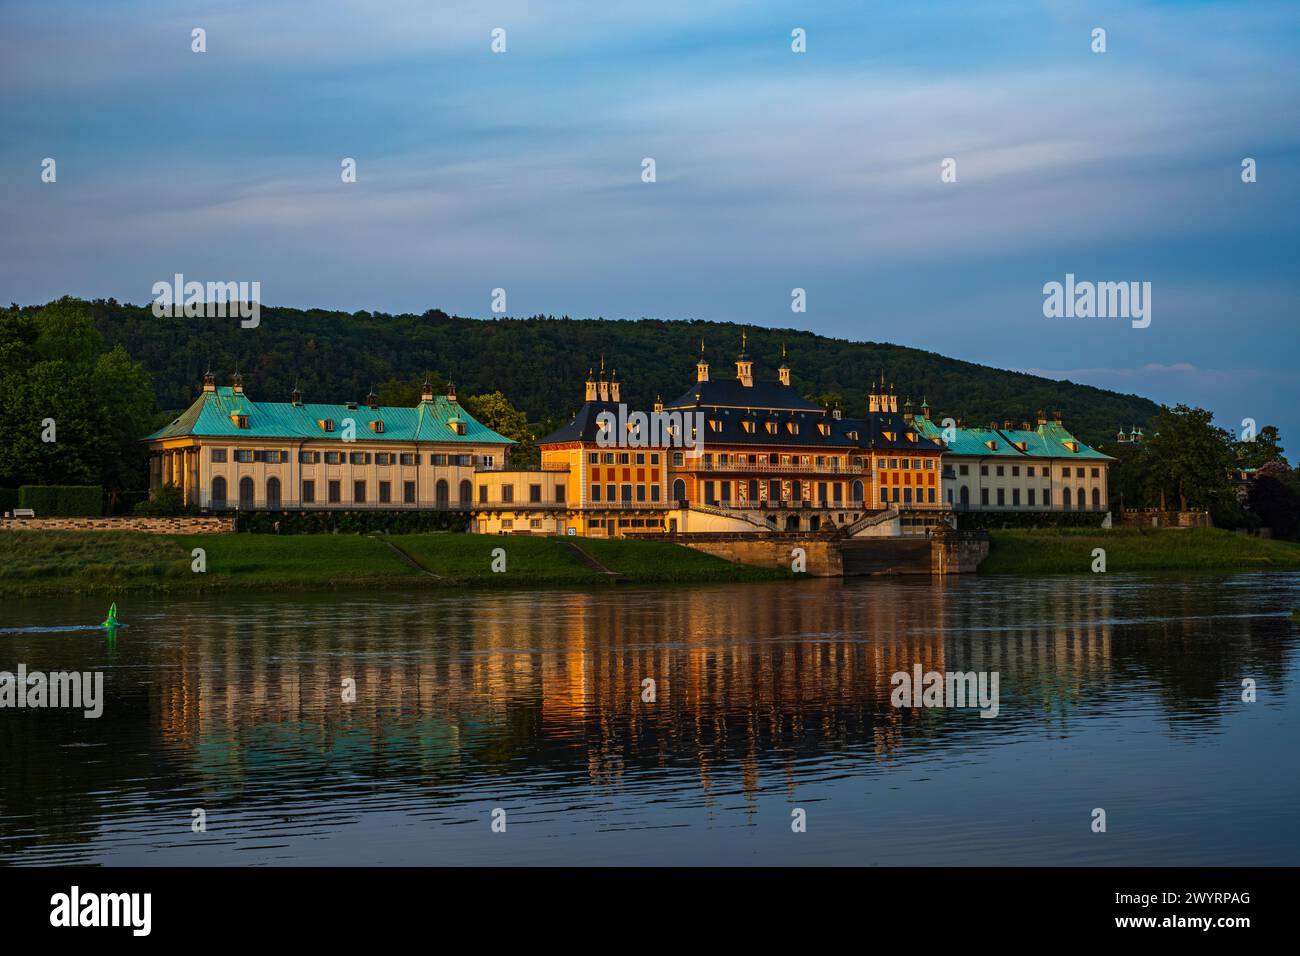 Elbseitige Ansicht von Schloss Pillnitz im Glanz der untergehenden Abendsonne, Dresden, Sachsen, Deutschland. Stockfoto